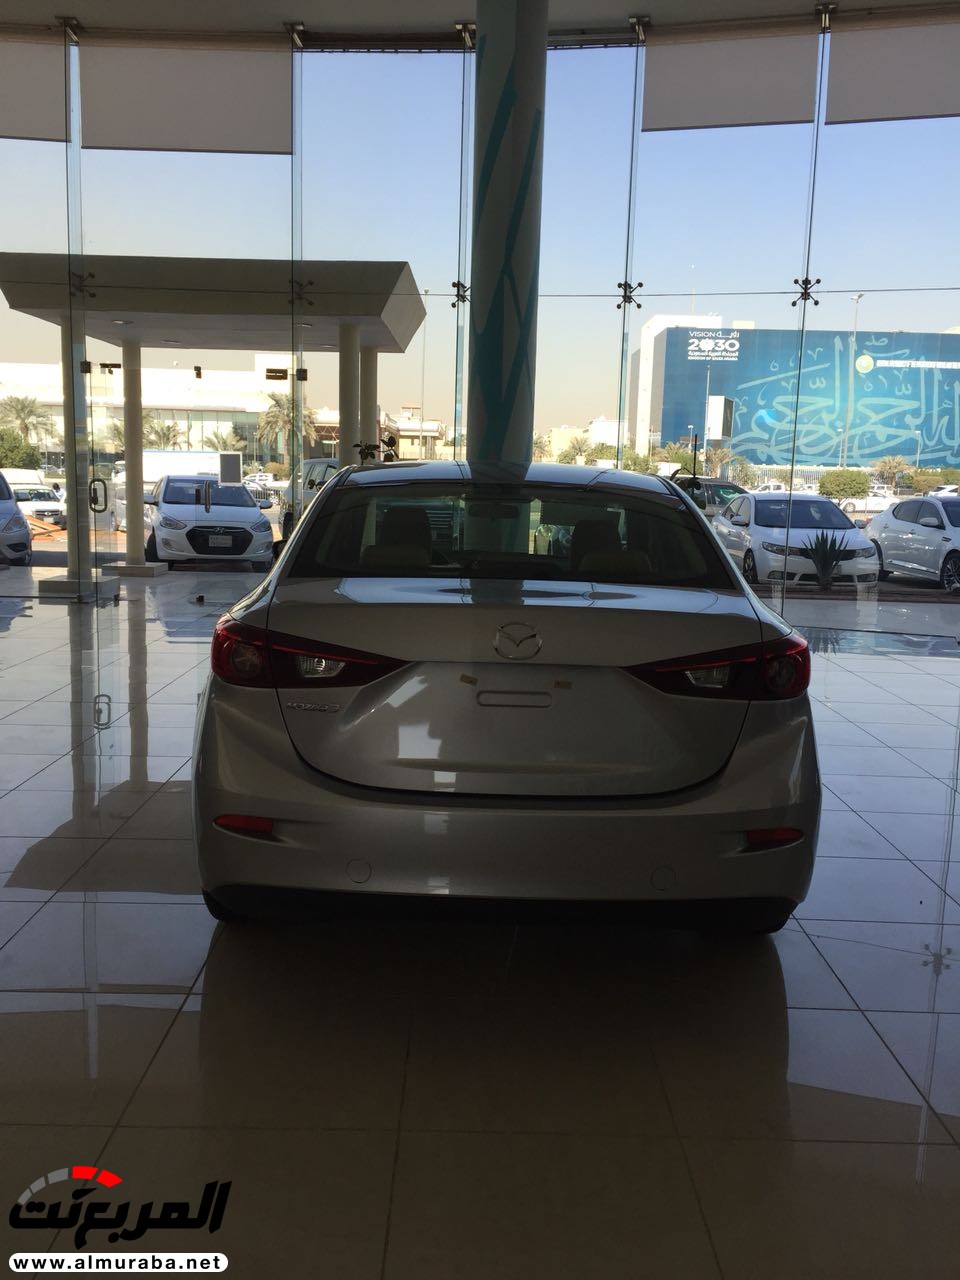 مازدا 3 2018 في السعودية لدى الحاج حسين علي رضا + الاسعار والمواصفات لجميع الفئات Mazda 3 17